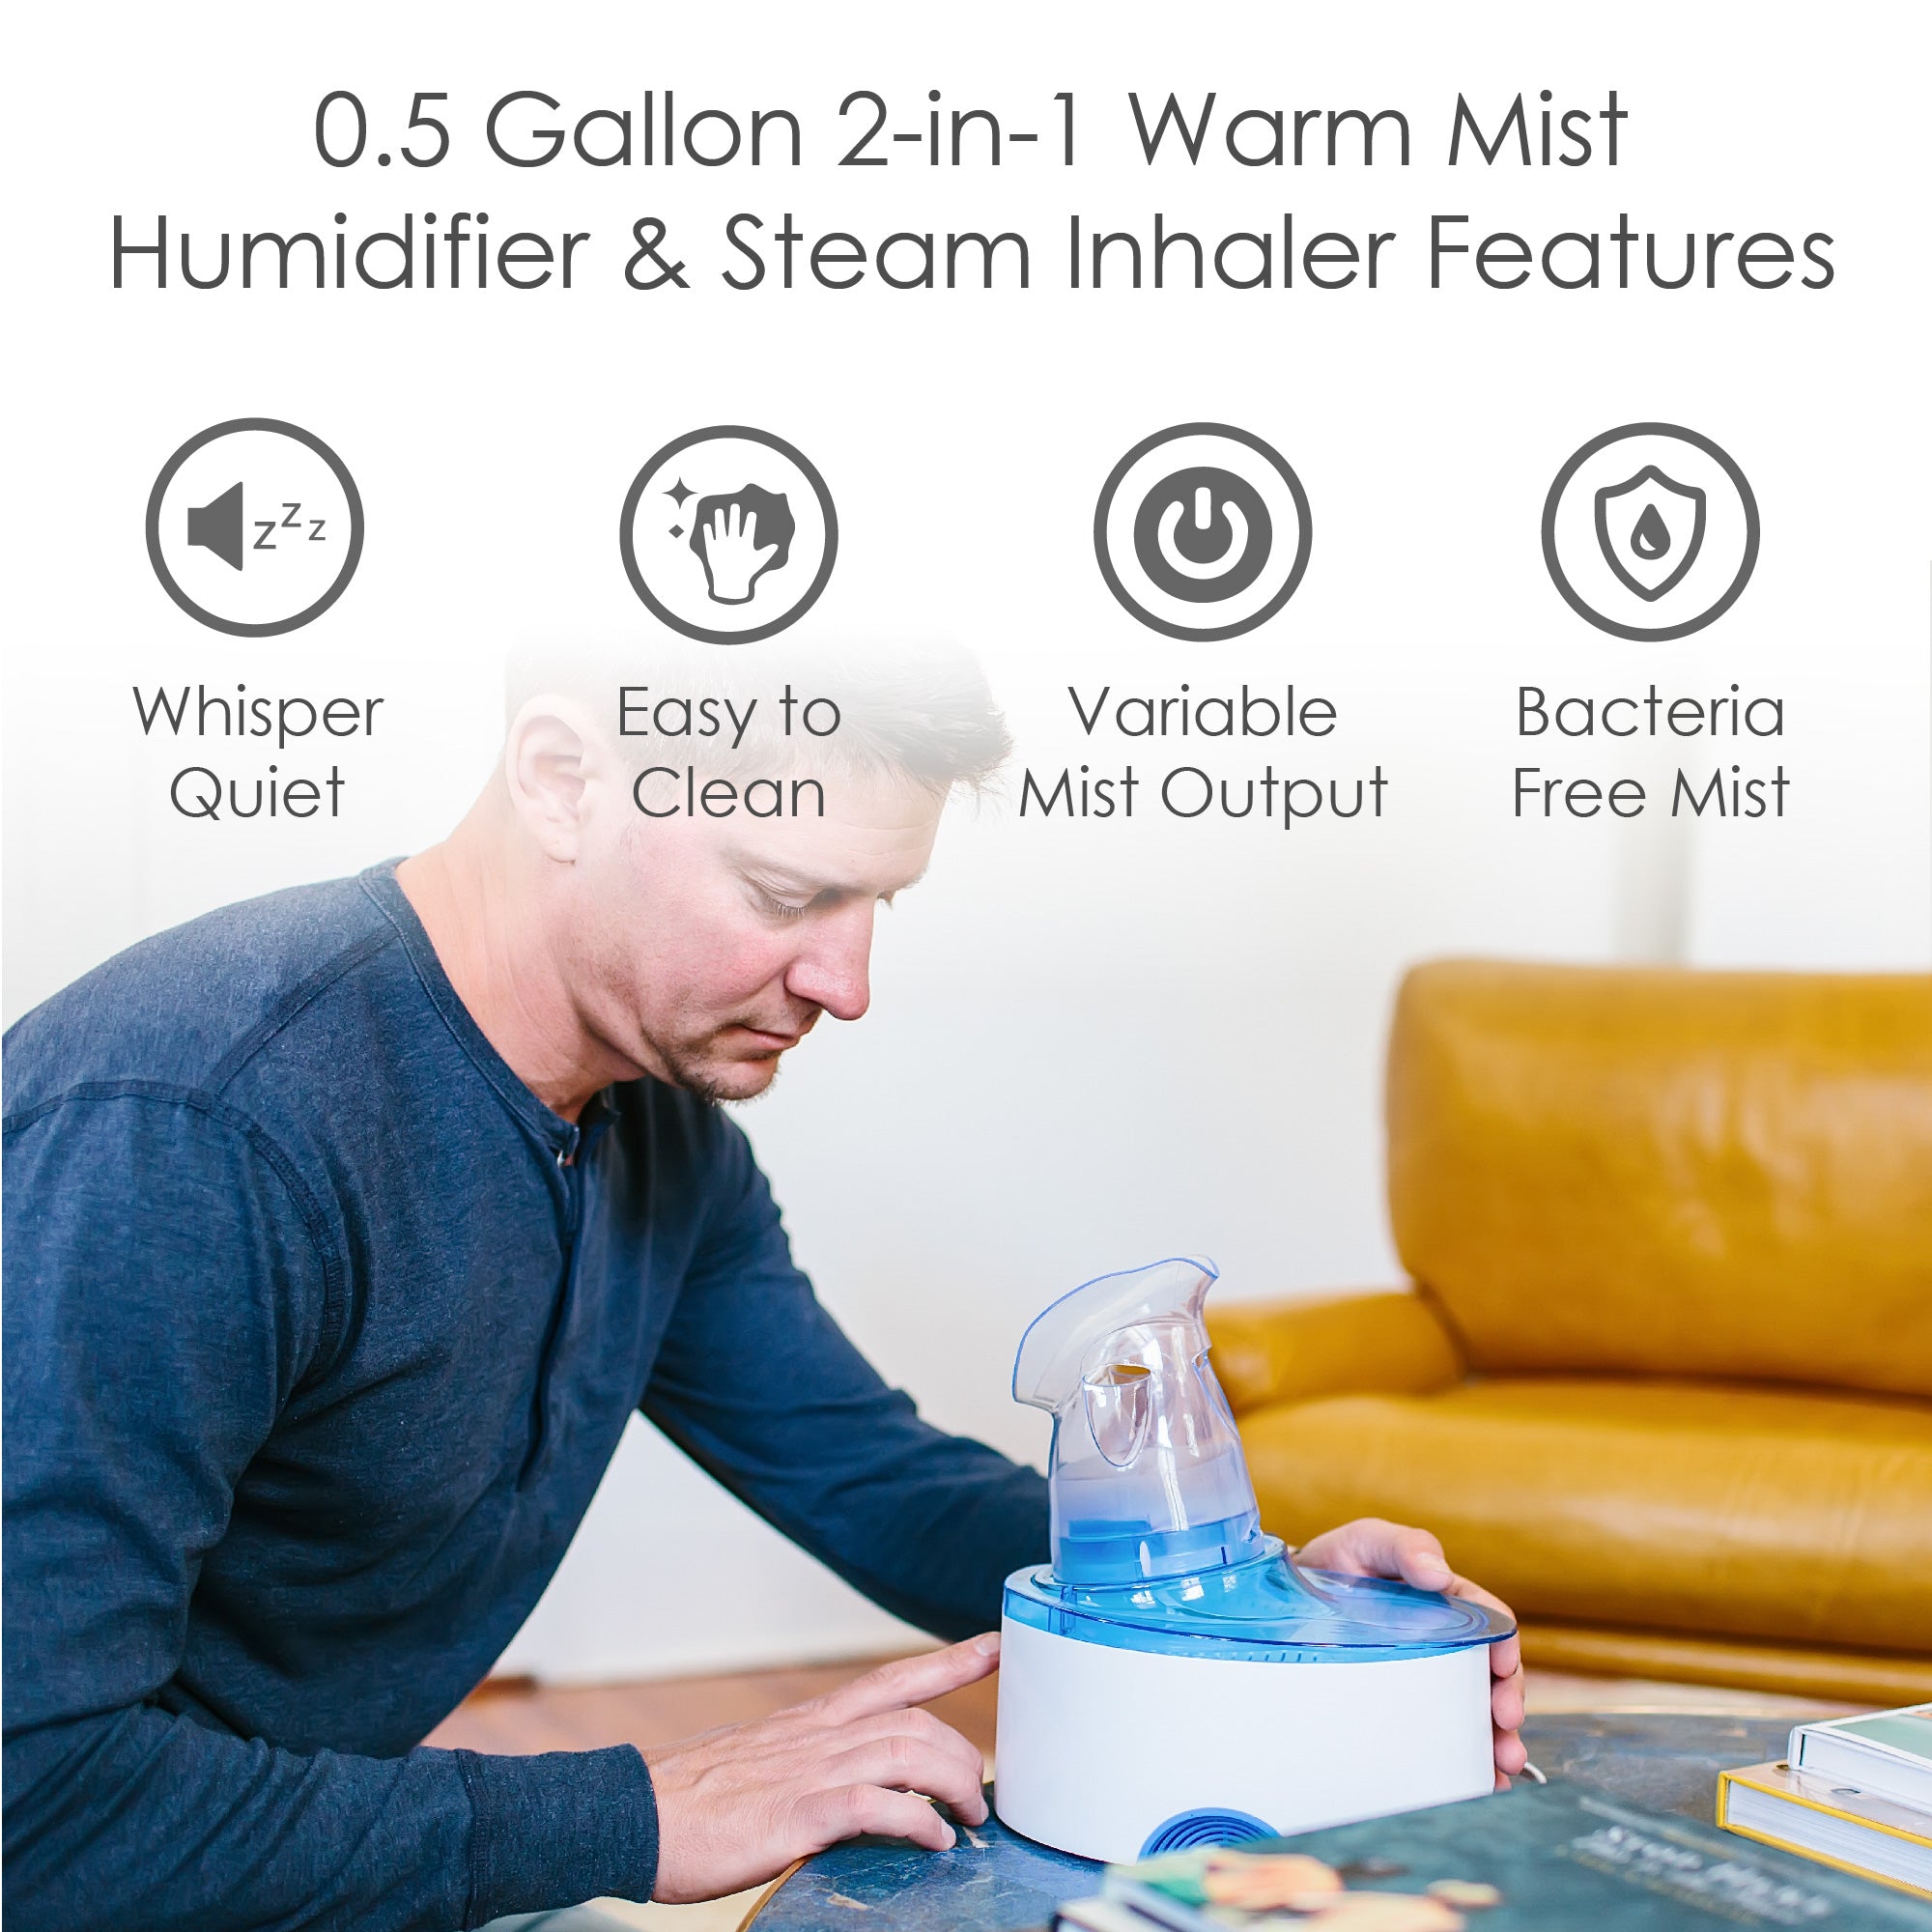 Crane 2-in-1 Warm Mist Humidifier & Respiration Steam Inhaler – Allergy  Buyers Club